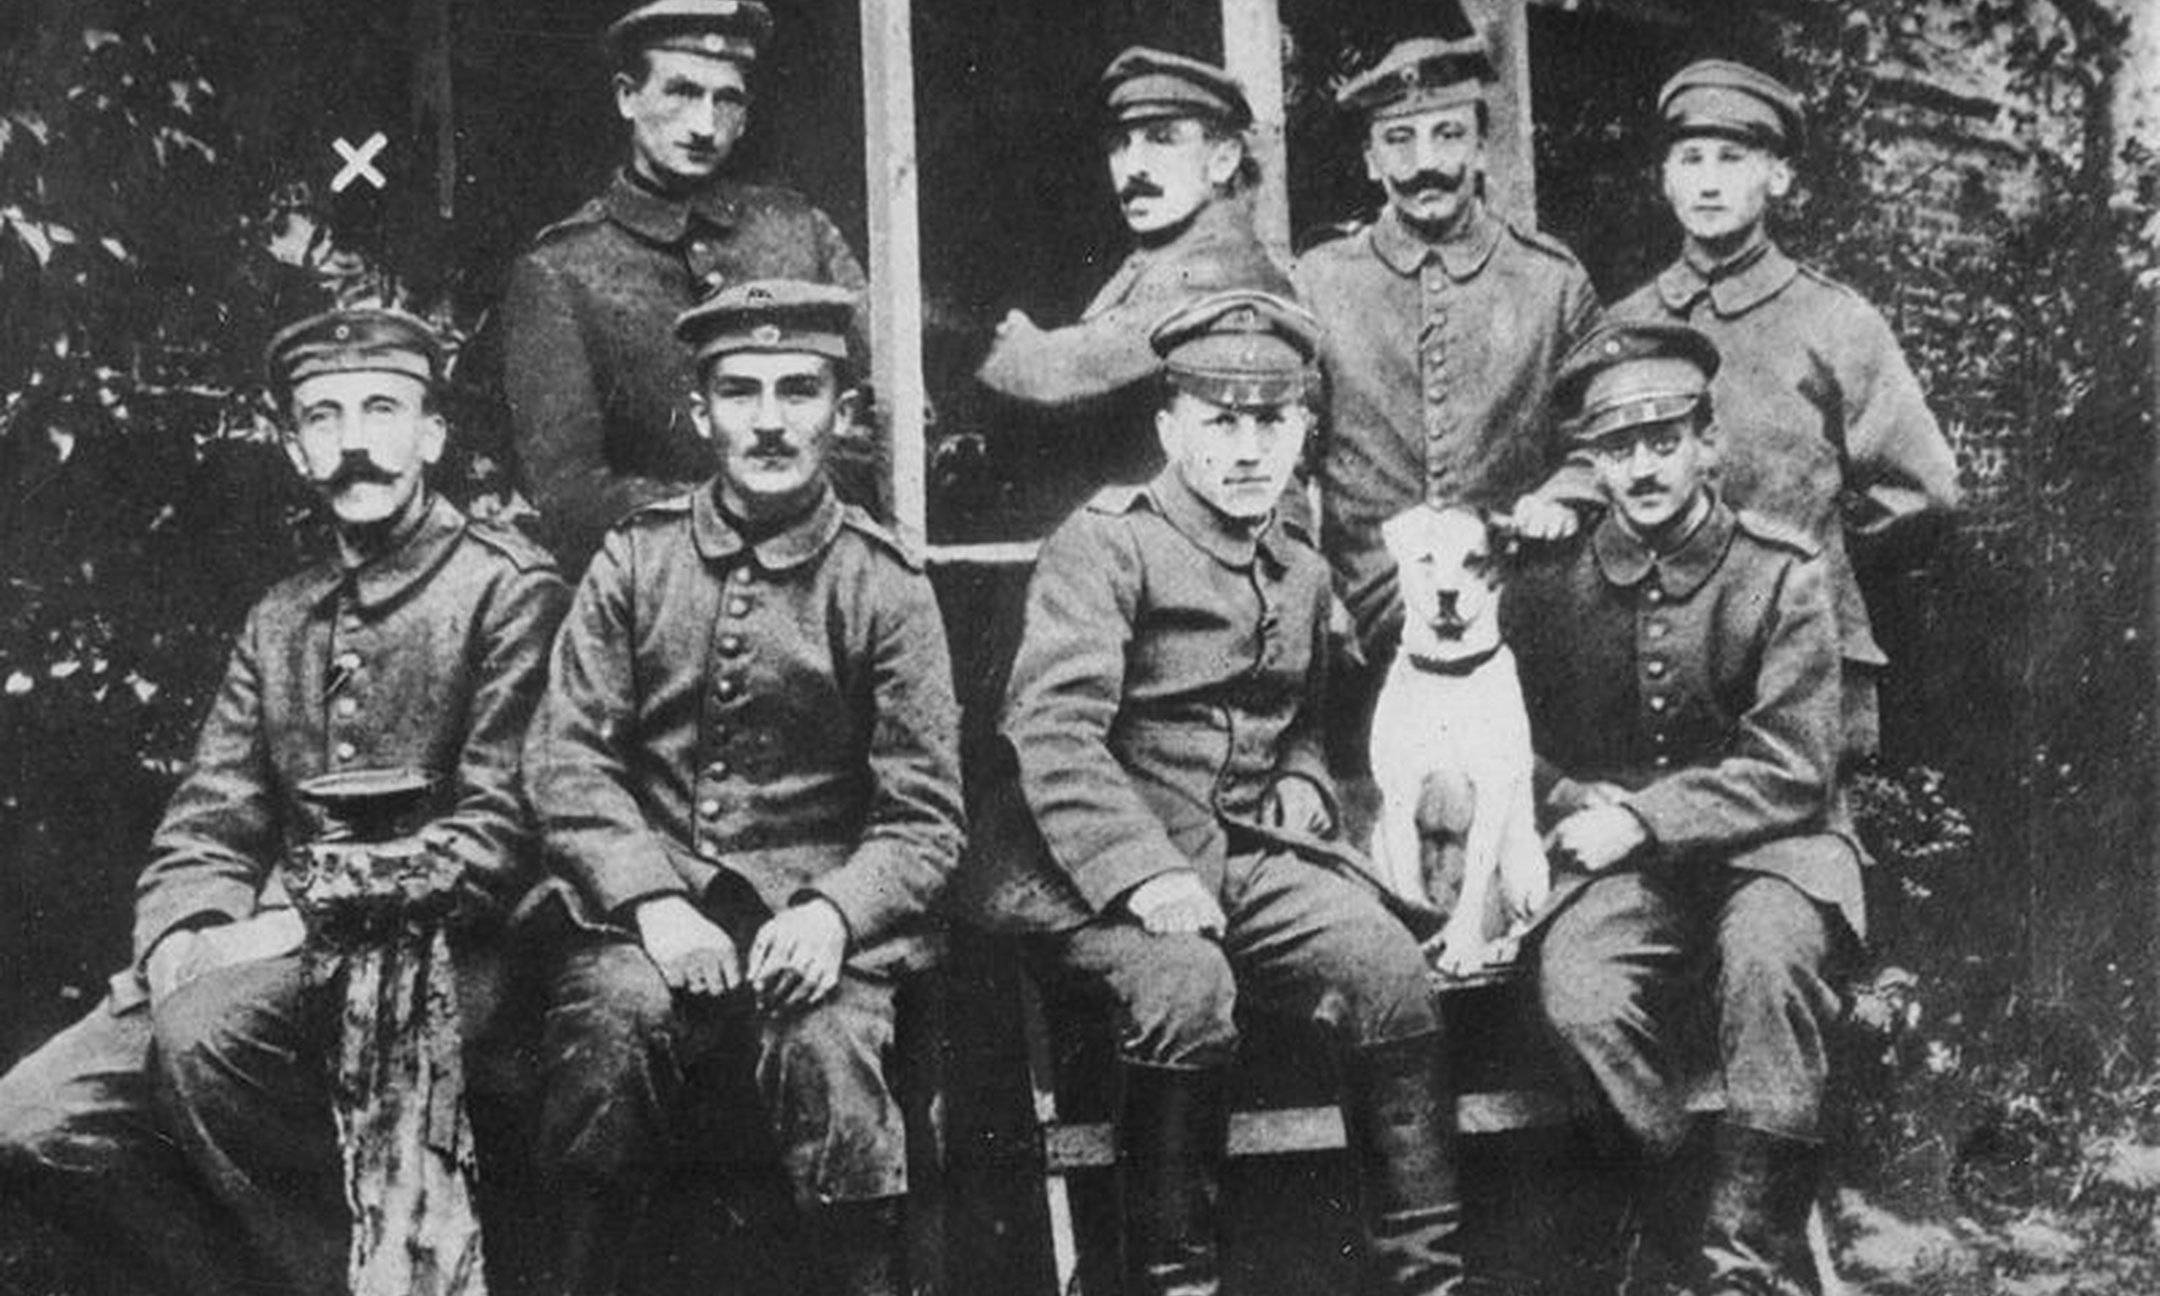 Duitse militairen tijdens de Eerste Wereldoorlog. Helemaal links op de foto: Hitler als jonge soldaat (ca. 1914).